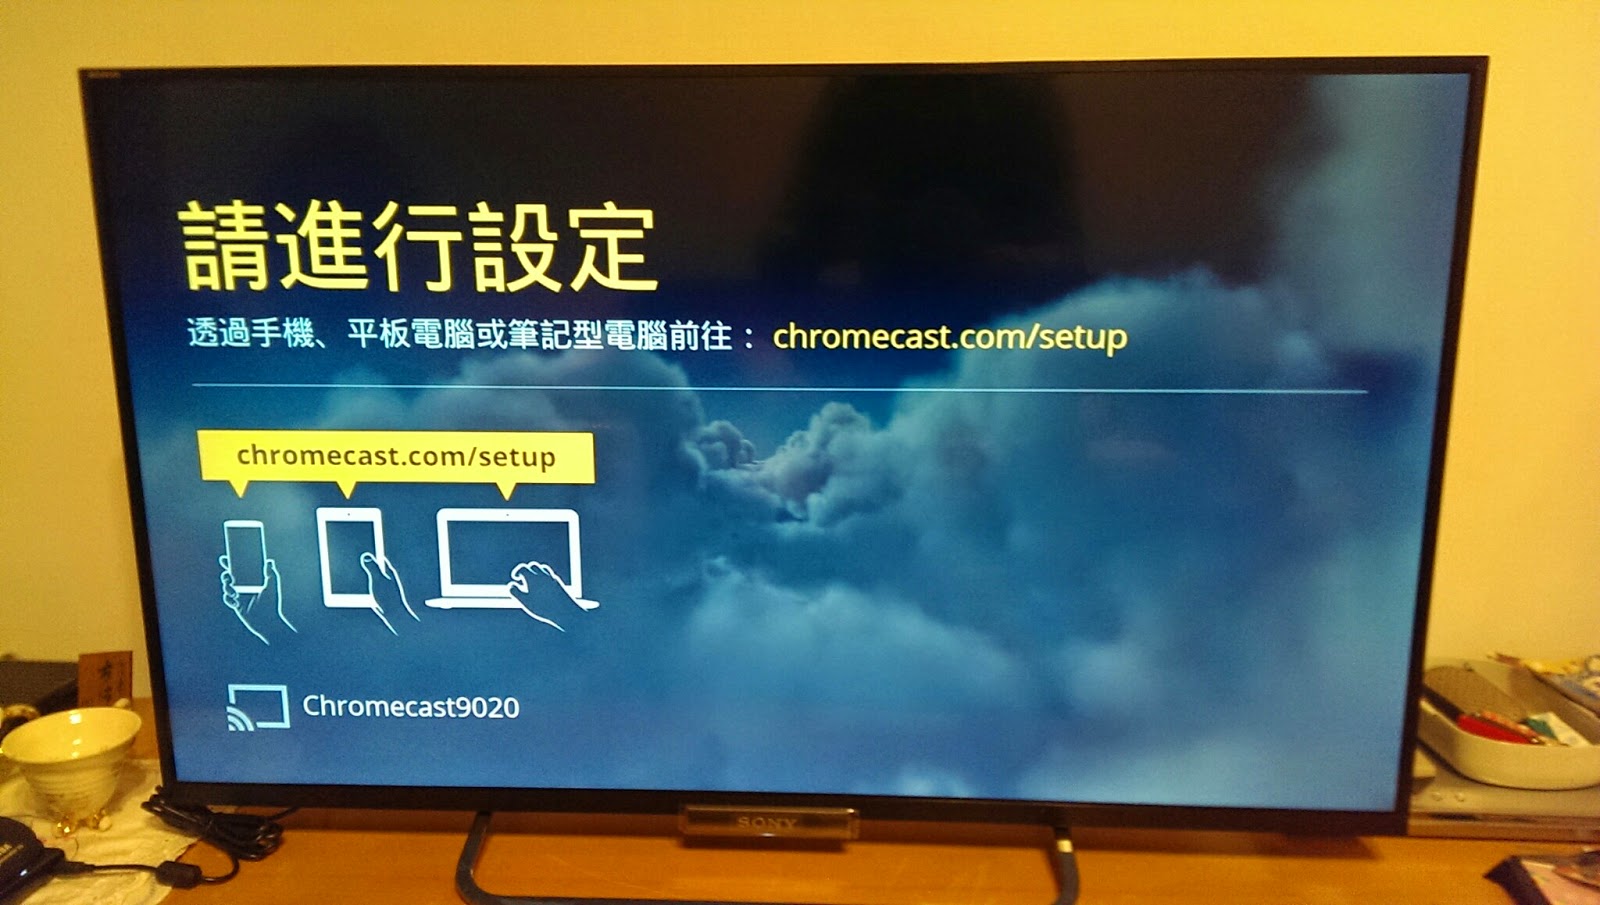 初代 Chromecast 居然還能獲得系統更新